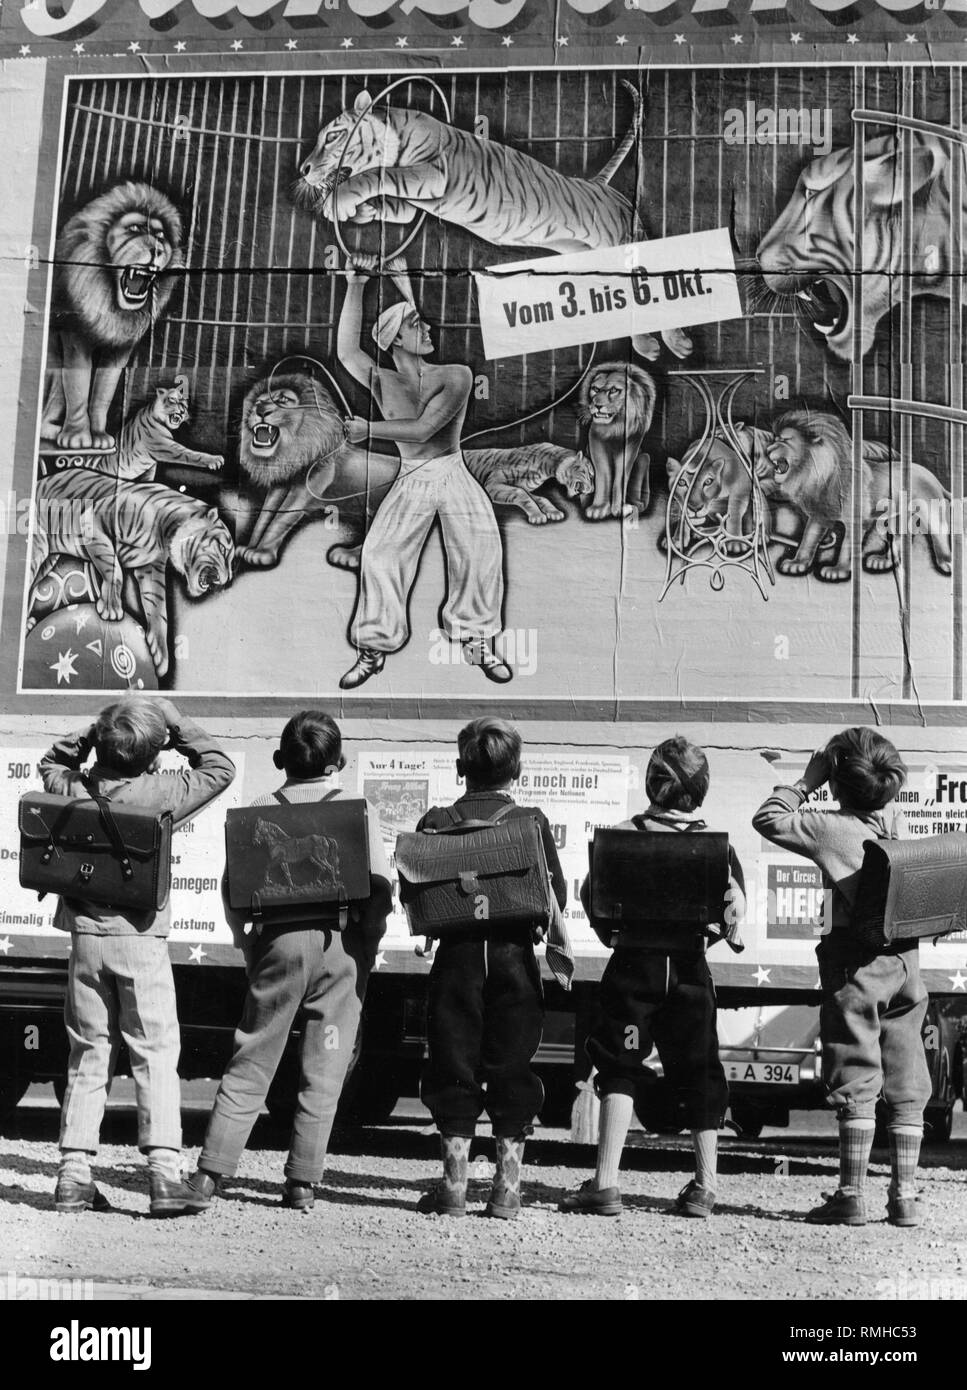 Les élèves avec leurs cartables admirer l'affiche de cirque Althoff' annonçant sa visite, photo des années 50. Banque D'Images